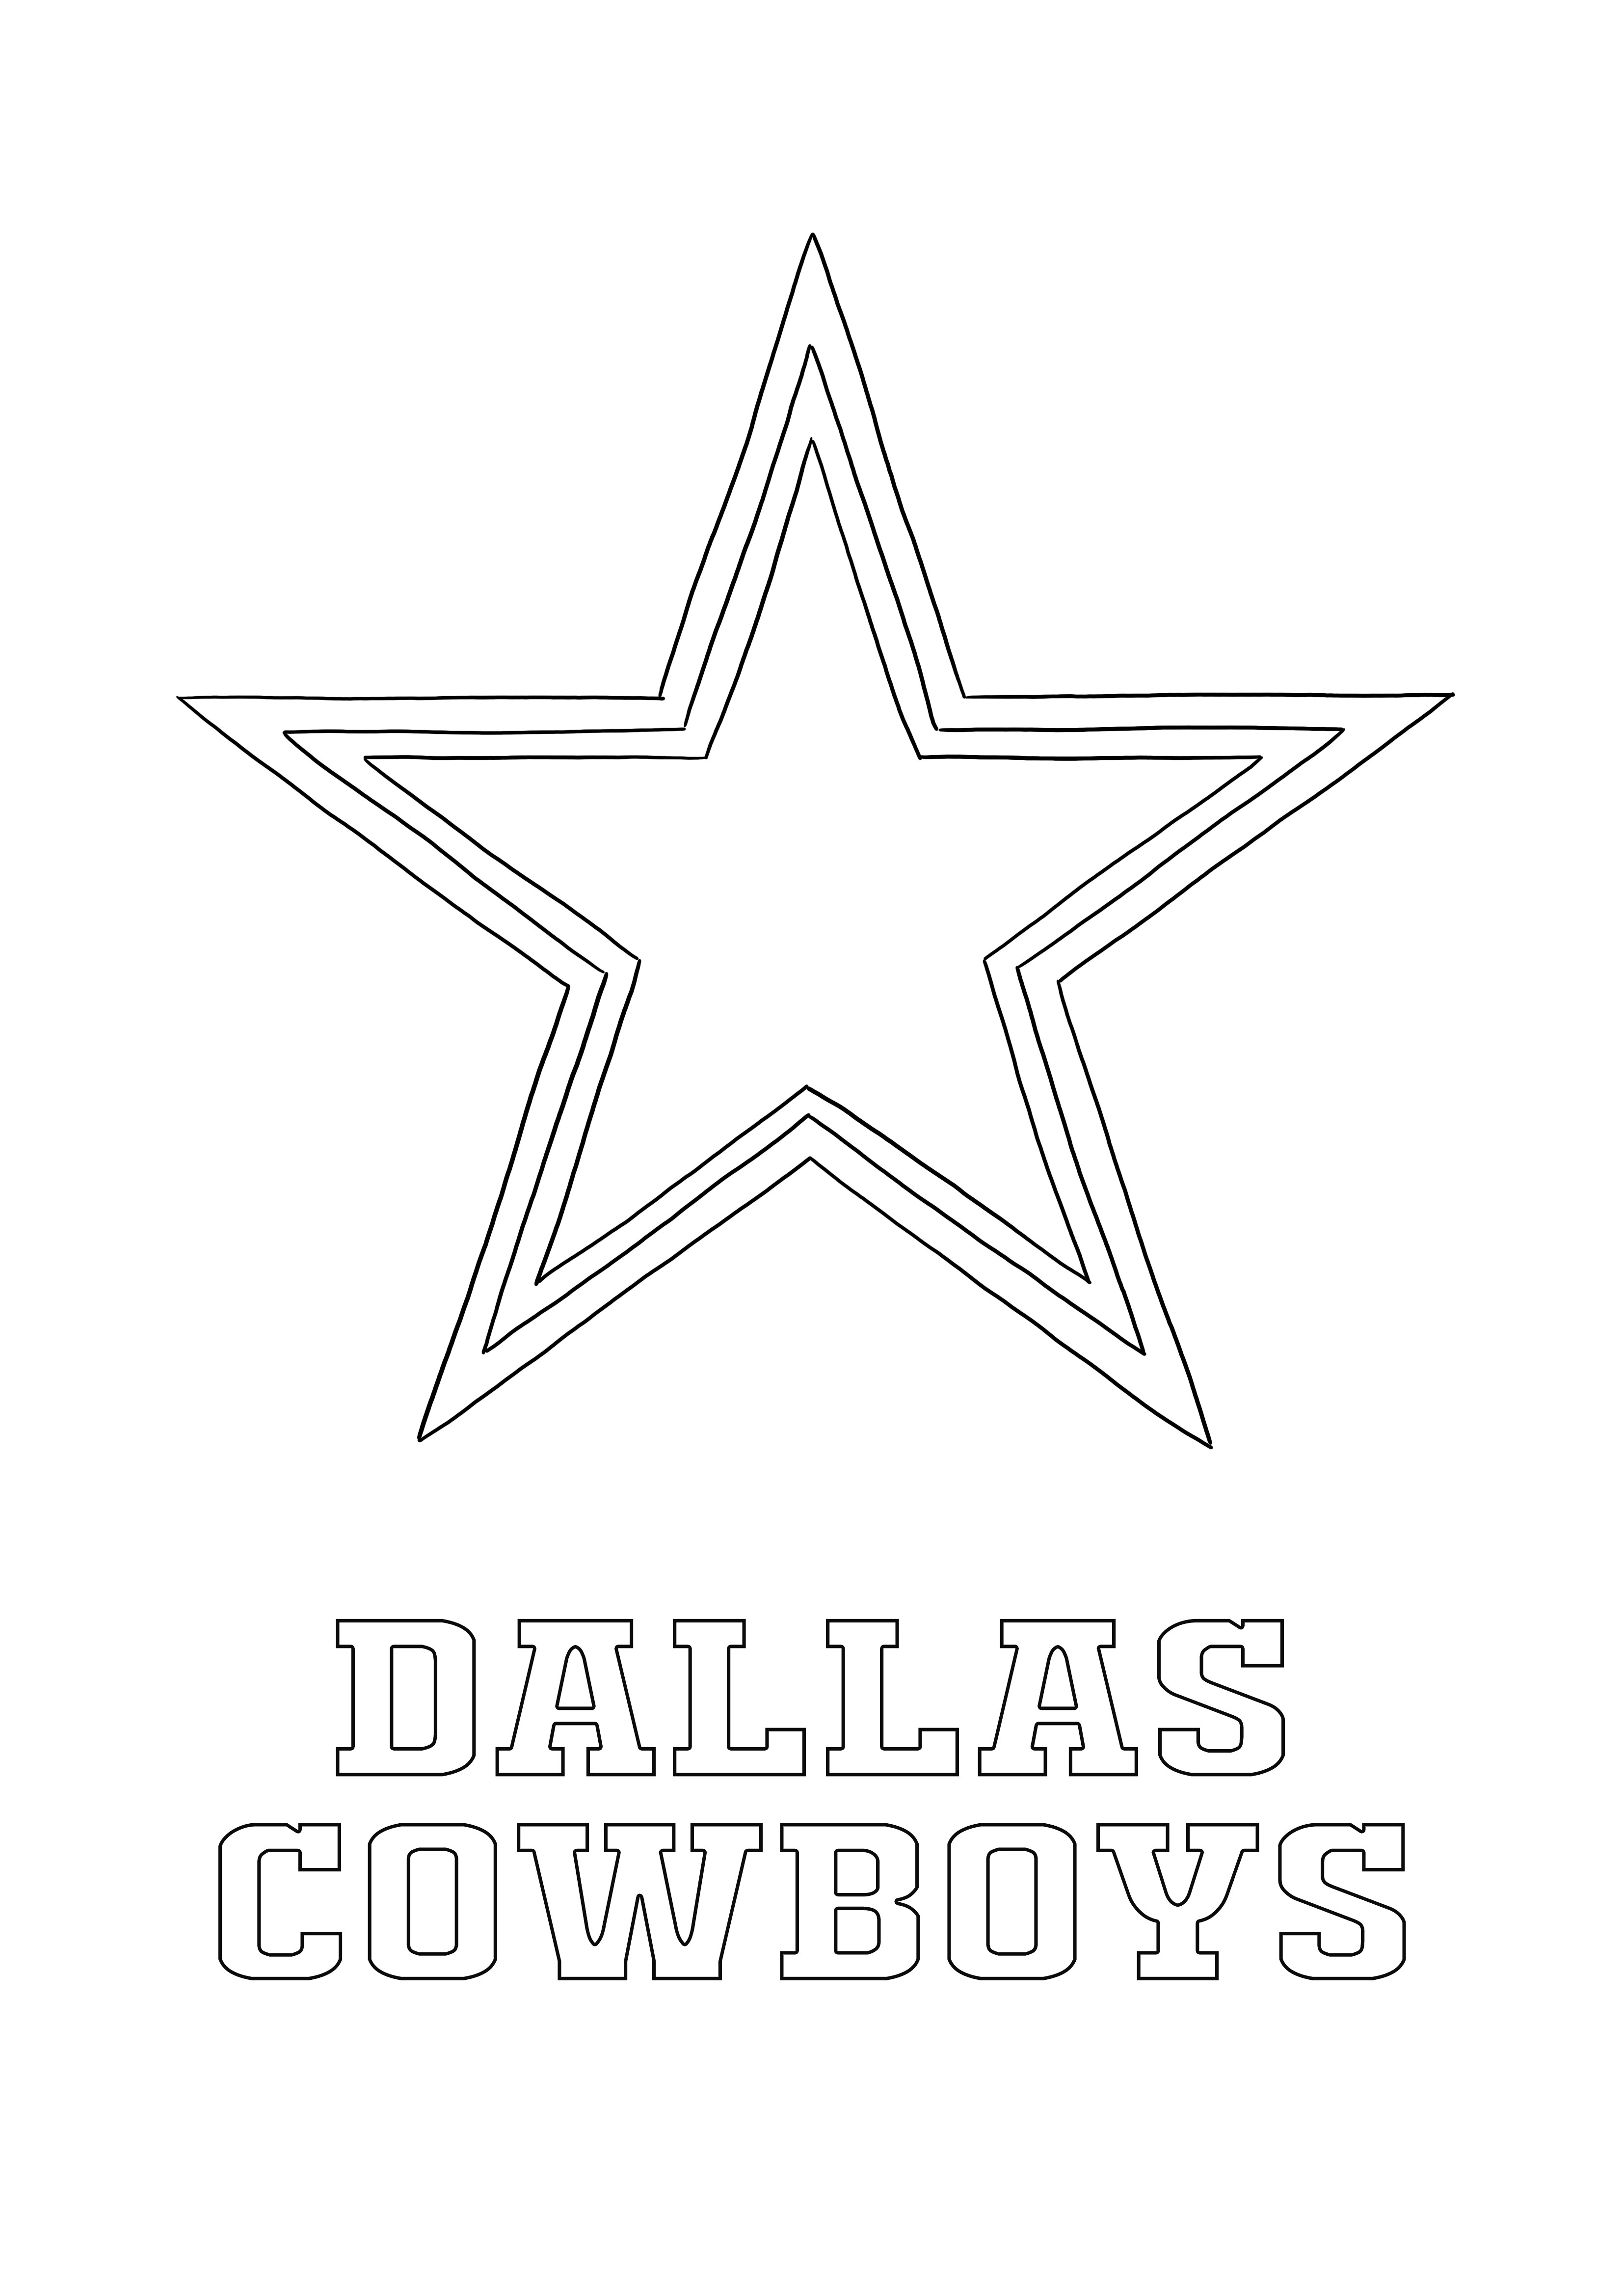 Logo de los Dallas Cowboys para colorear e imprimir gratis para todos los aficionados al deporte